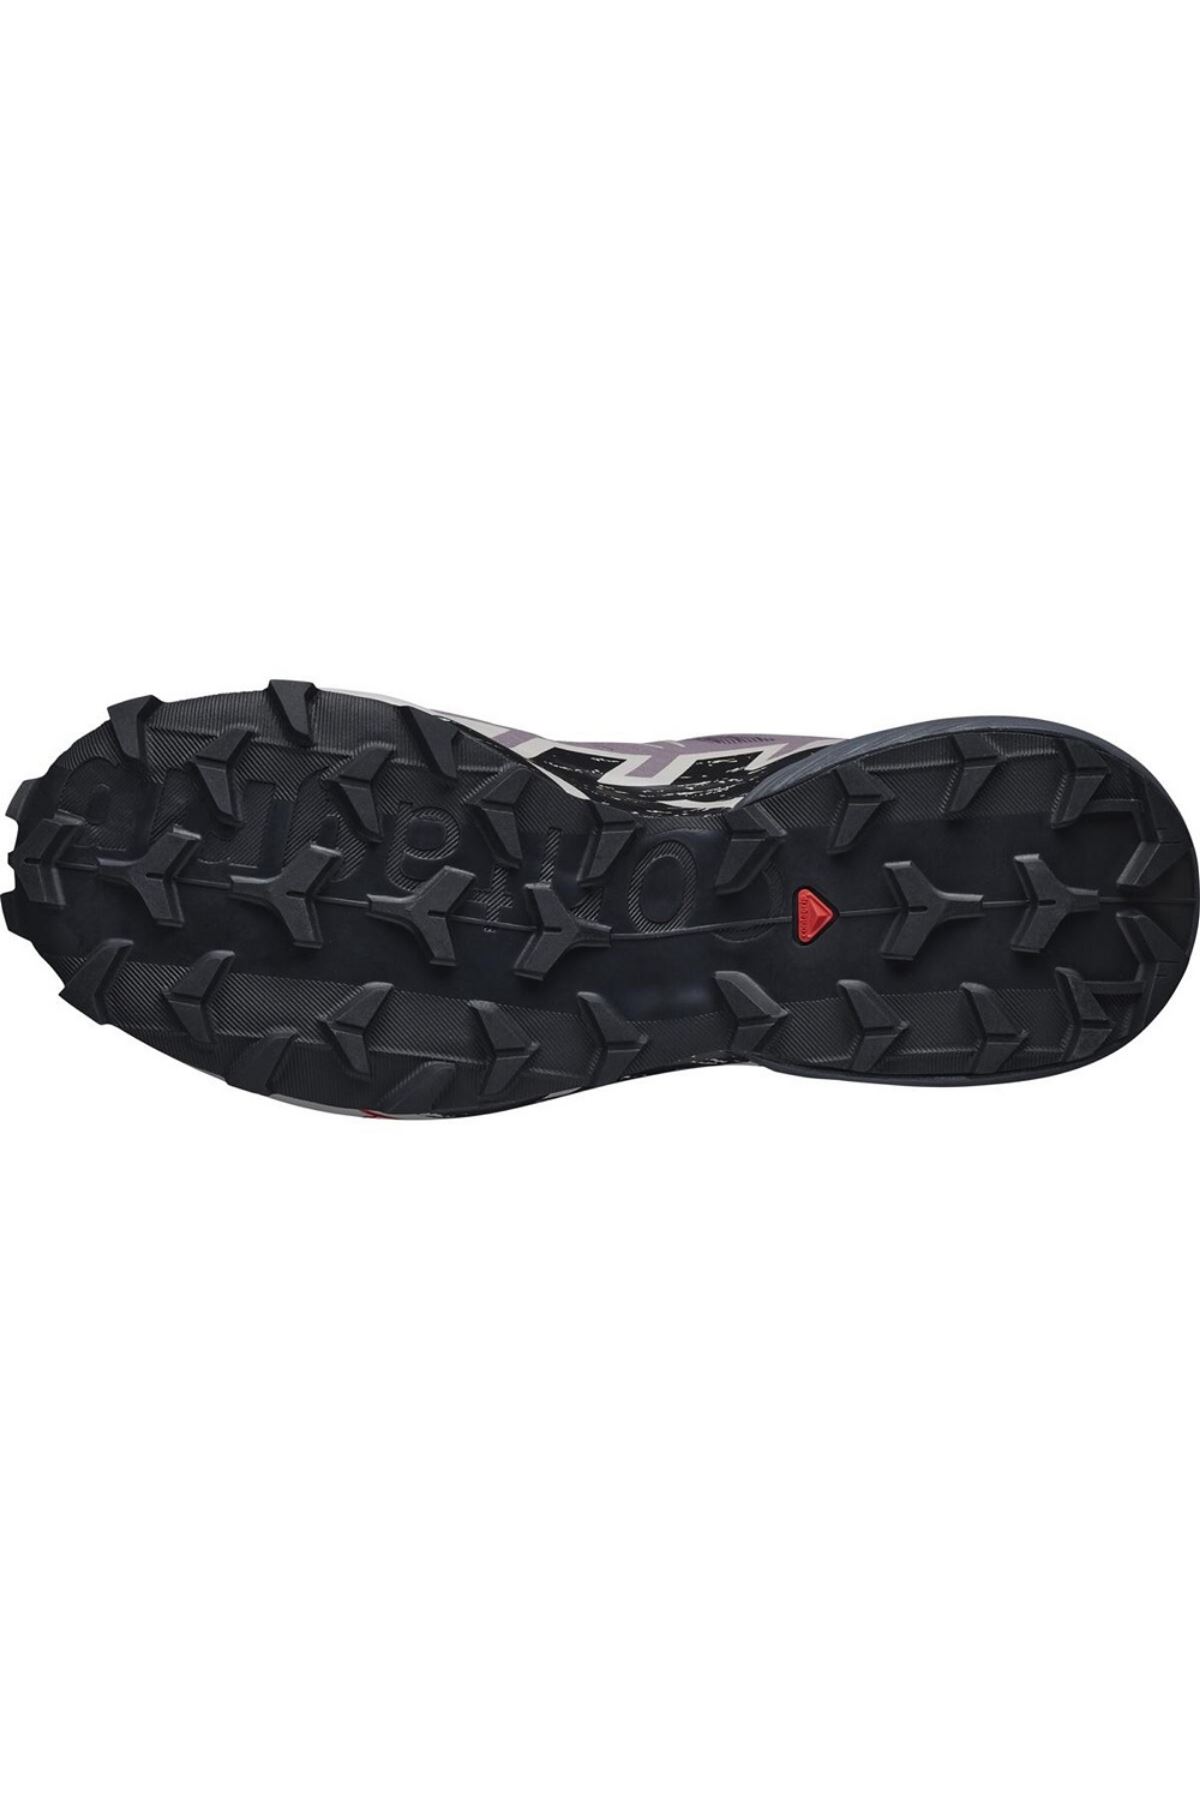 Speedcross 6 Kadın Siyah Spor Ayakkabı - L41742900